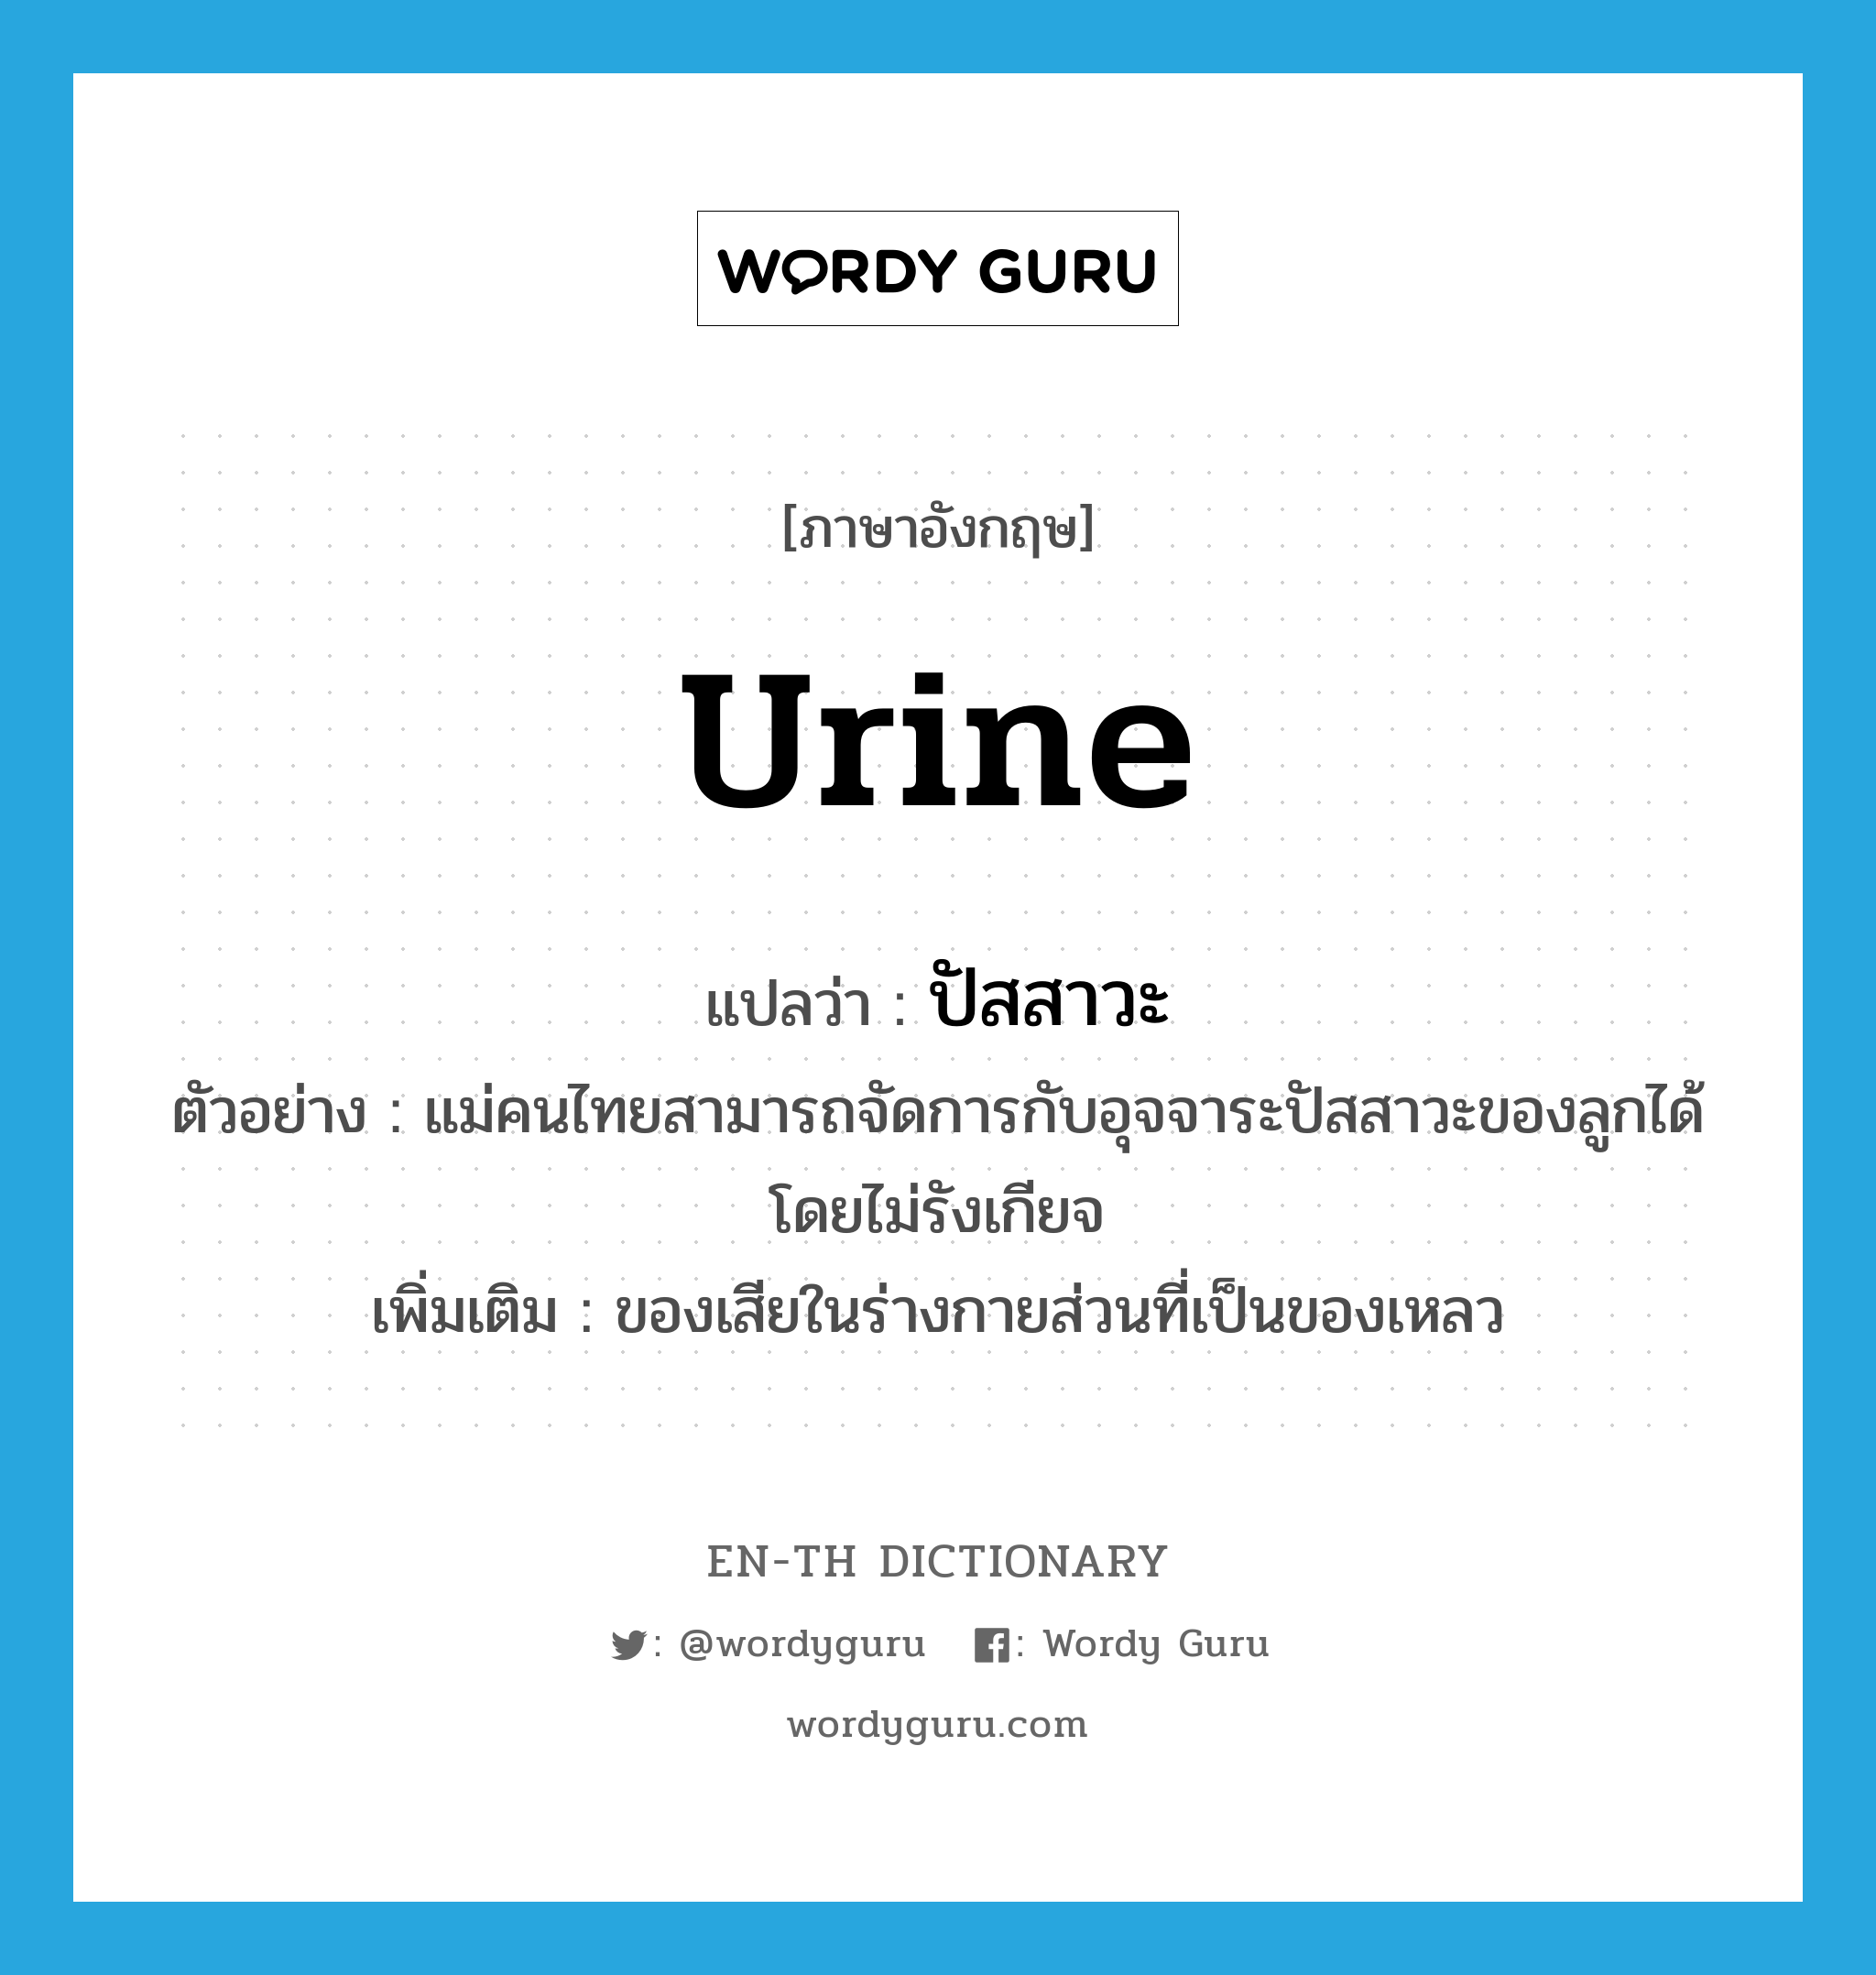 urine แปลว่า?, คำศัพท์ภาษาอังกฤษ urine แปลว่า ปัสสาวะ ประเภท N ตัวอย่าง แม่คนไทยสามารถจัดการกับอุจจาระปัสสาวะของลูกได้โดยไม่รังเกียจ เพิ่มเติม ของเสียในร่างกายส่วนที่เป็นของเหลว หมวด N